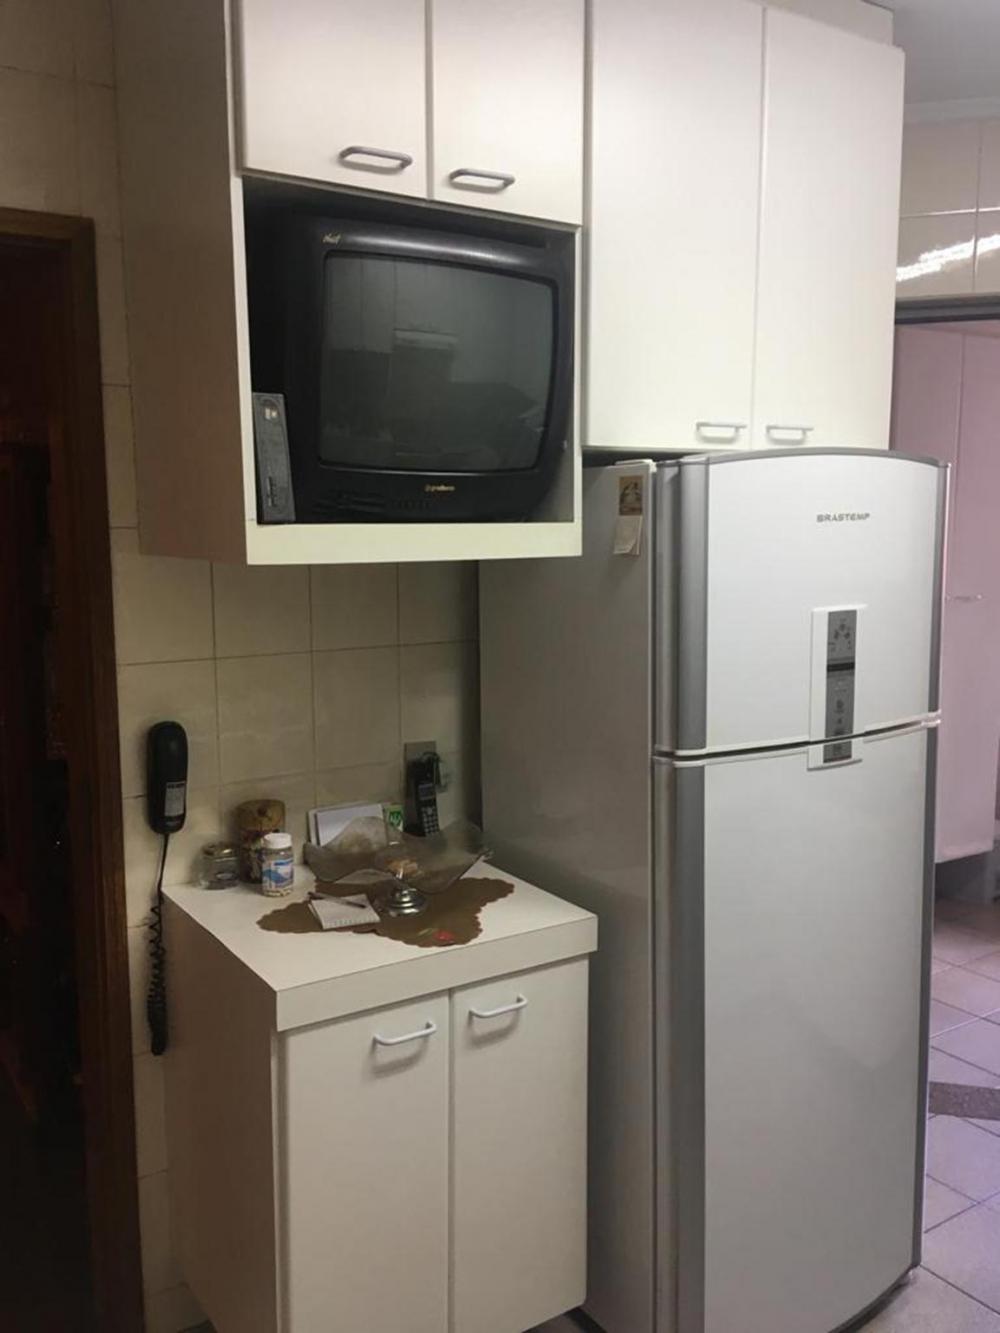 Comprar Apartamento / Padrão em São José do Rio Preto apenas R$ 550.000,00 - Foto 13